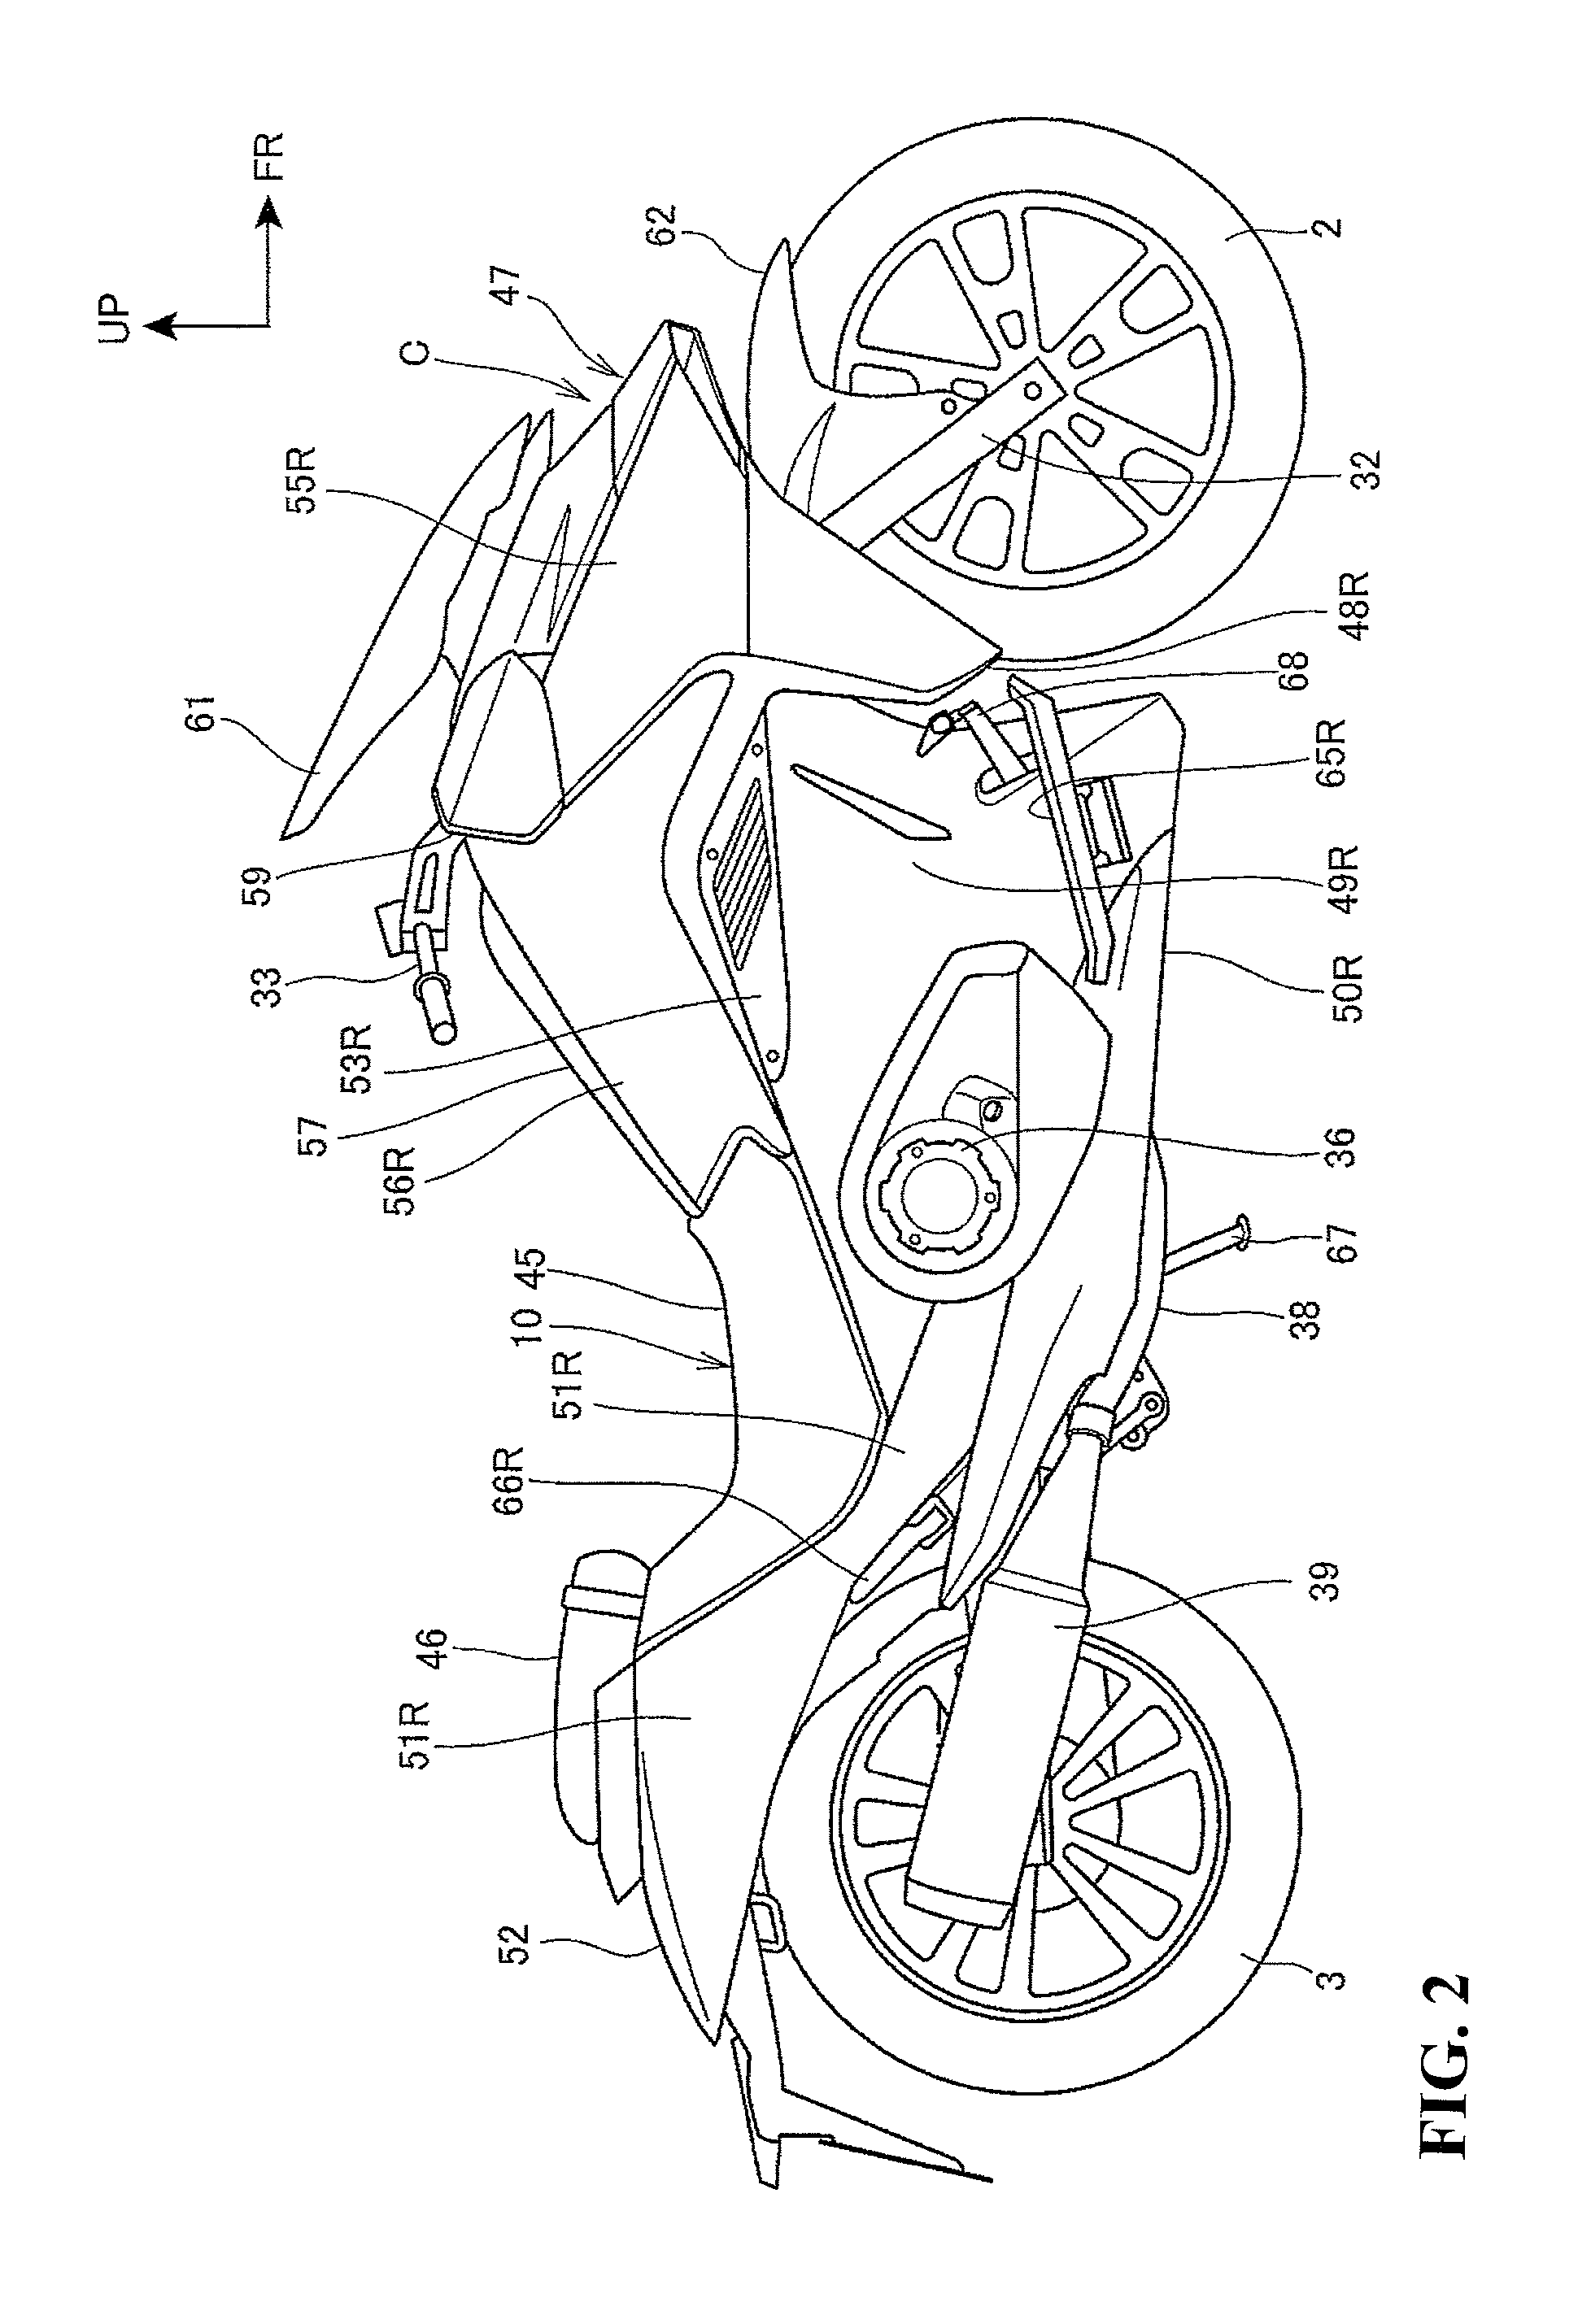 Locking structure for saddle type vehicle